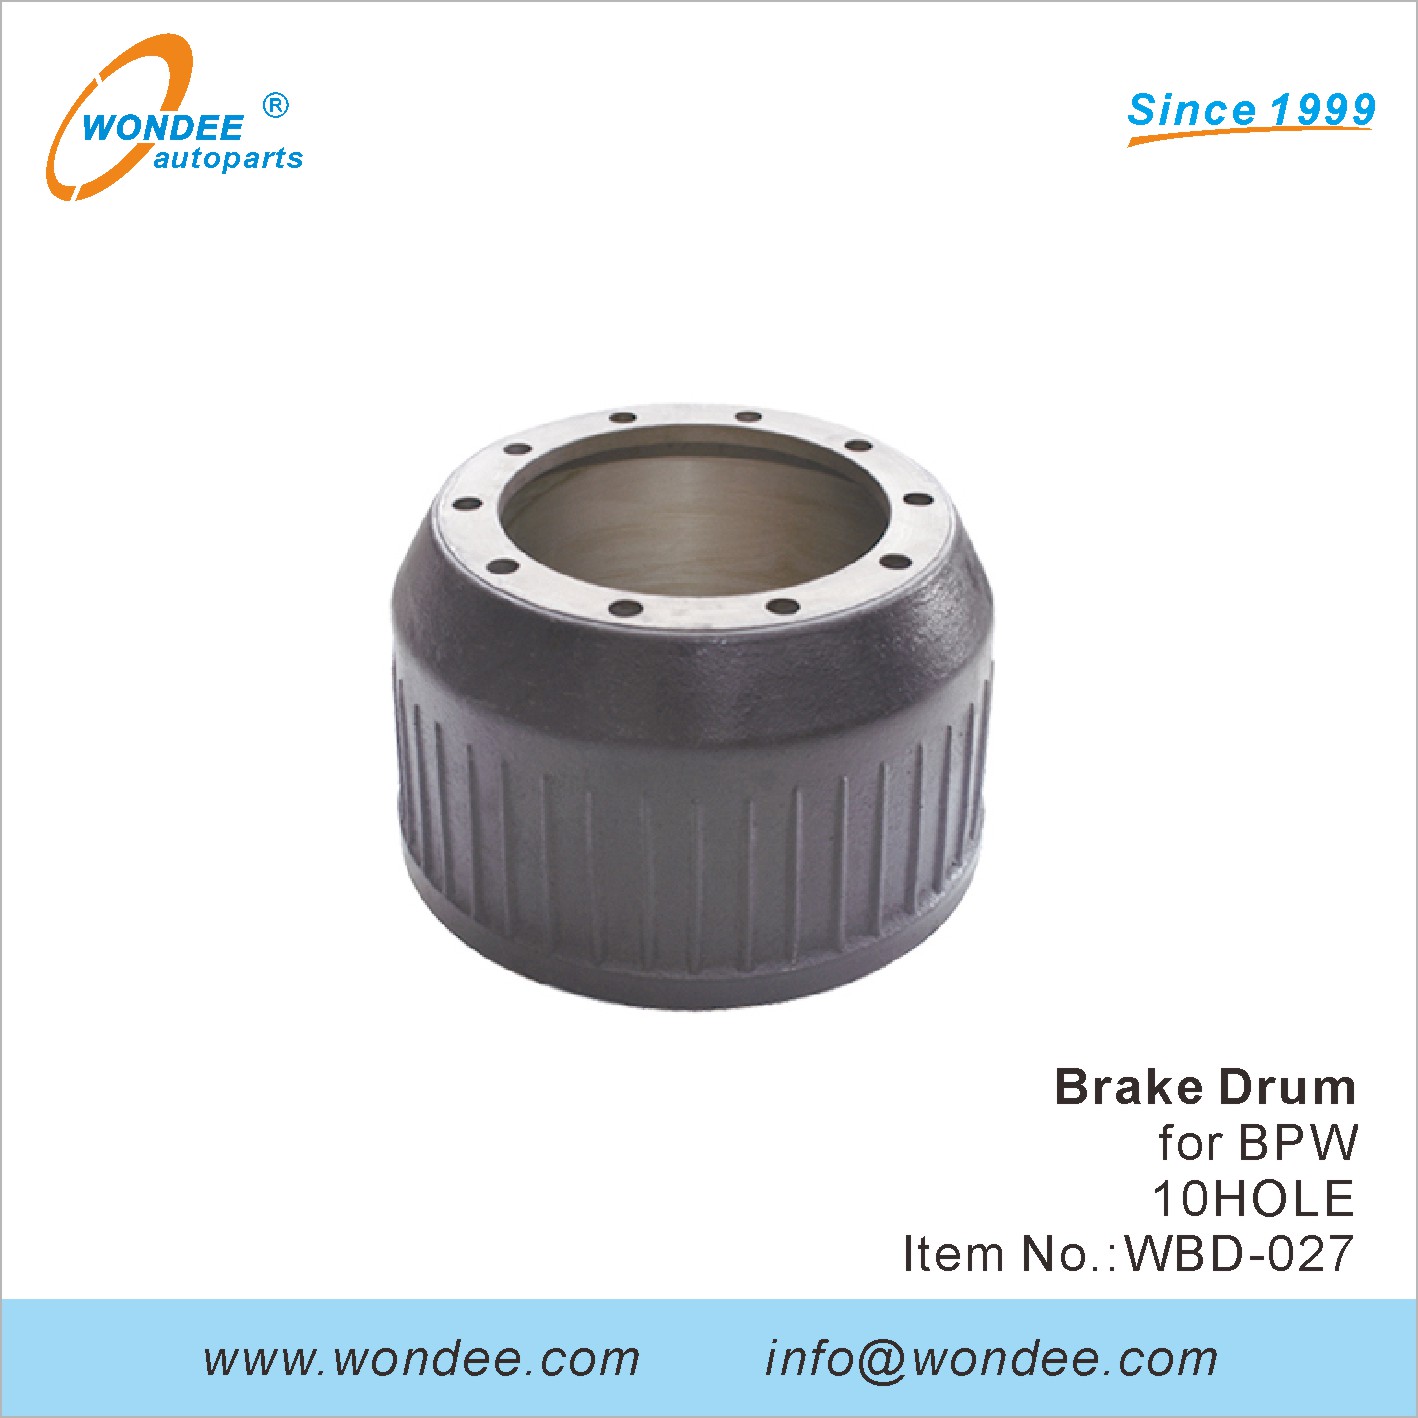 WONDEE brake drum (27)